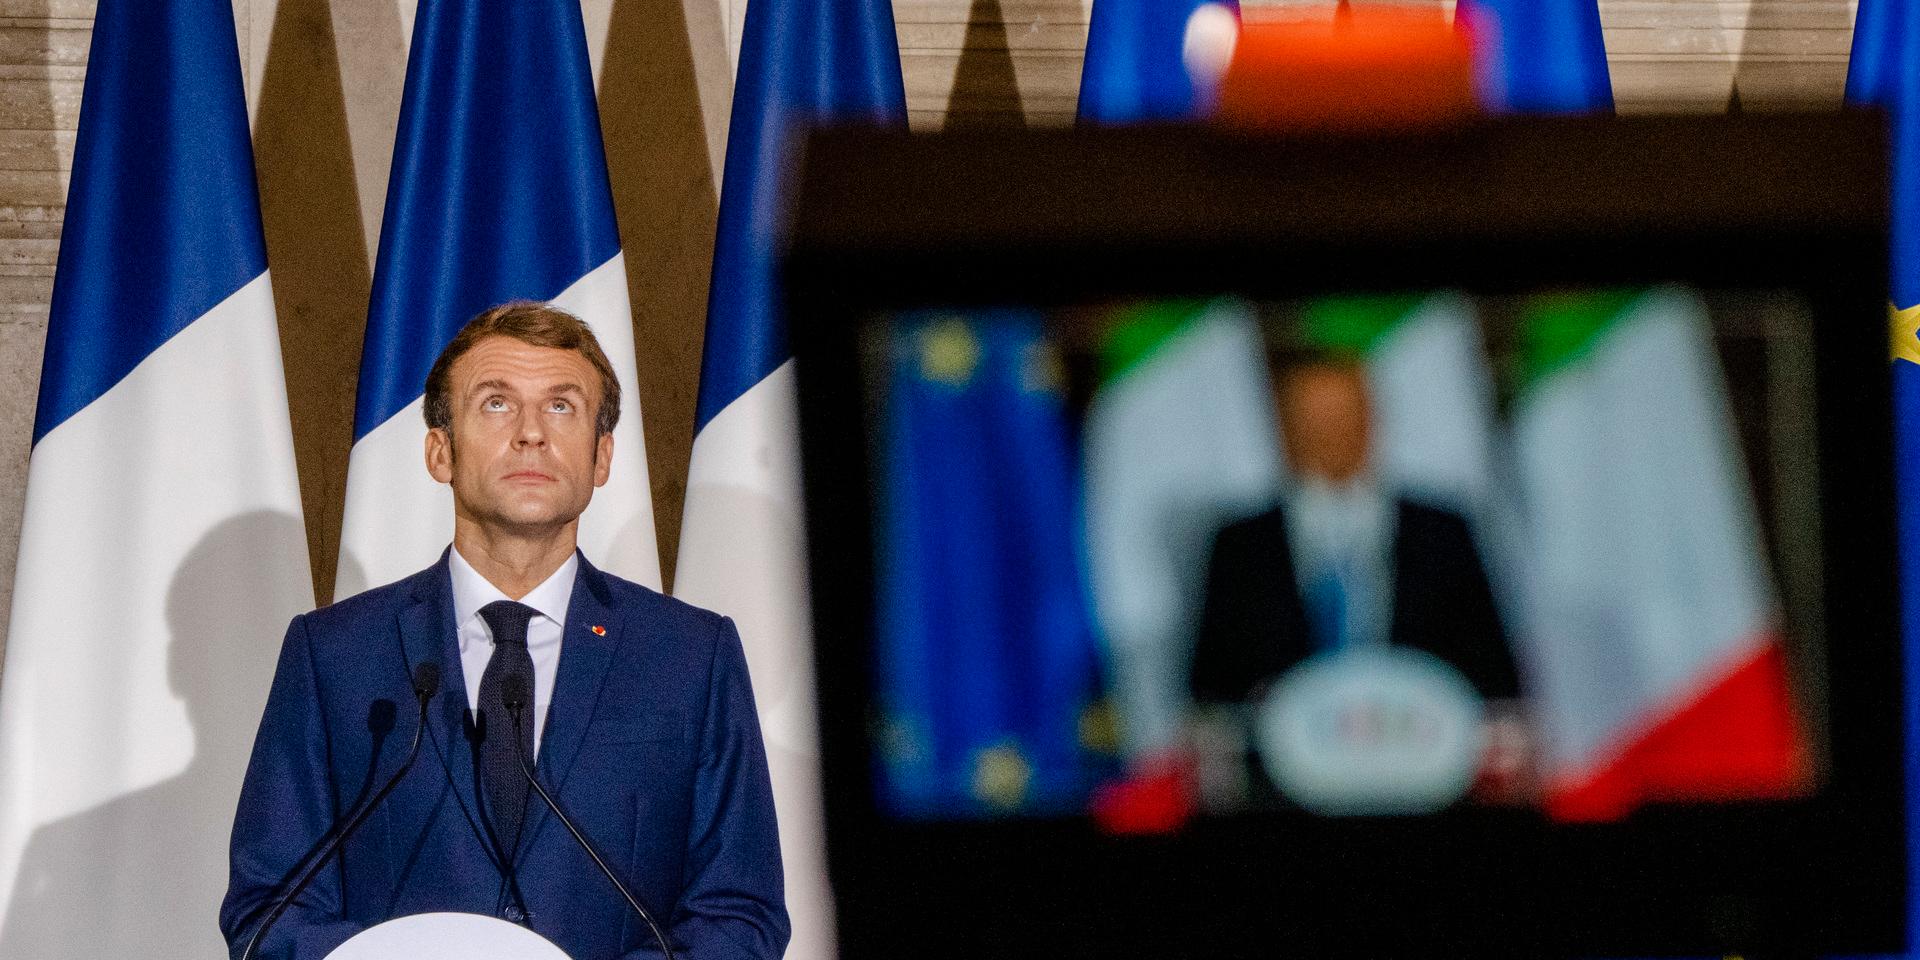 Frankrikes president Emmanuel Macron kommenterade bråket under en presskonferens.